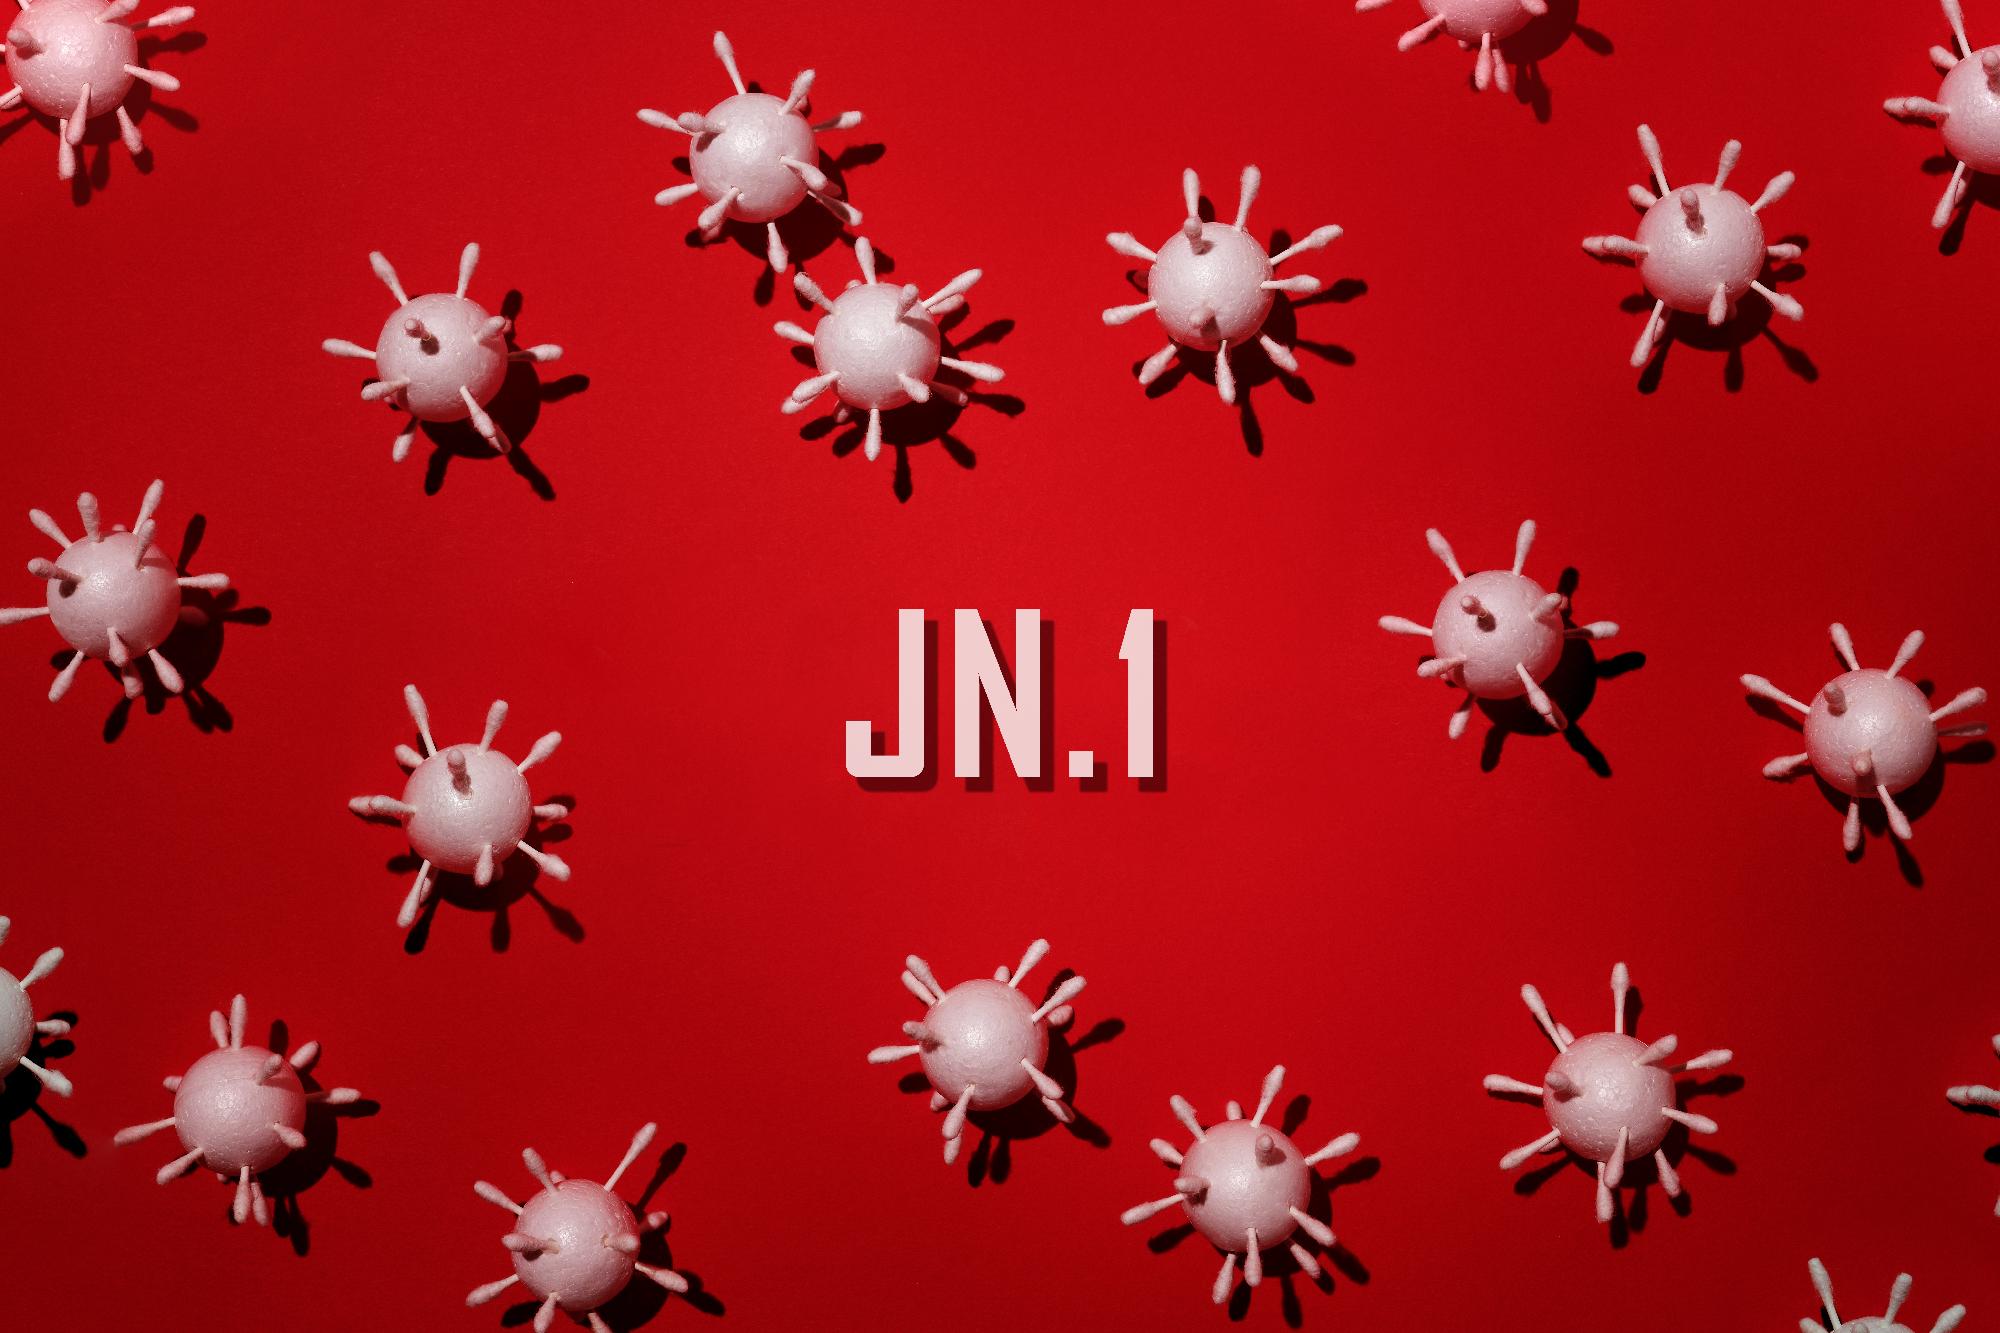 Az Európai Gyógyszerügynökség javaslata az új, JN.1 vírusvariánssal kapcsolatban